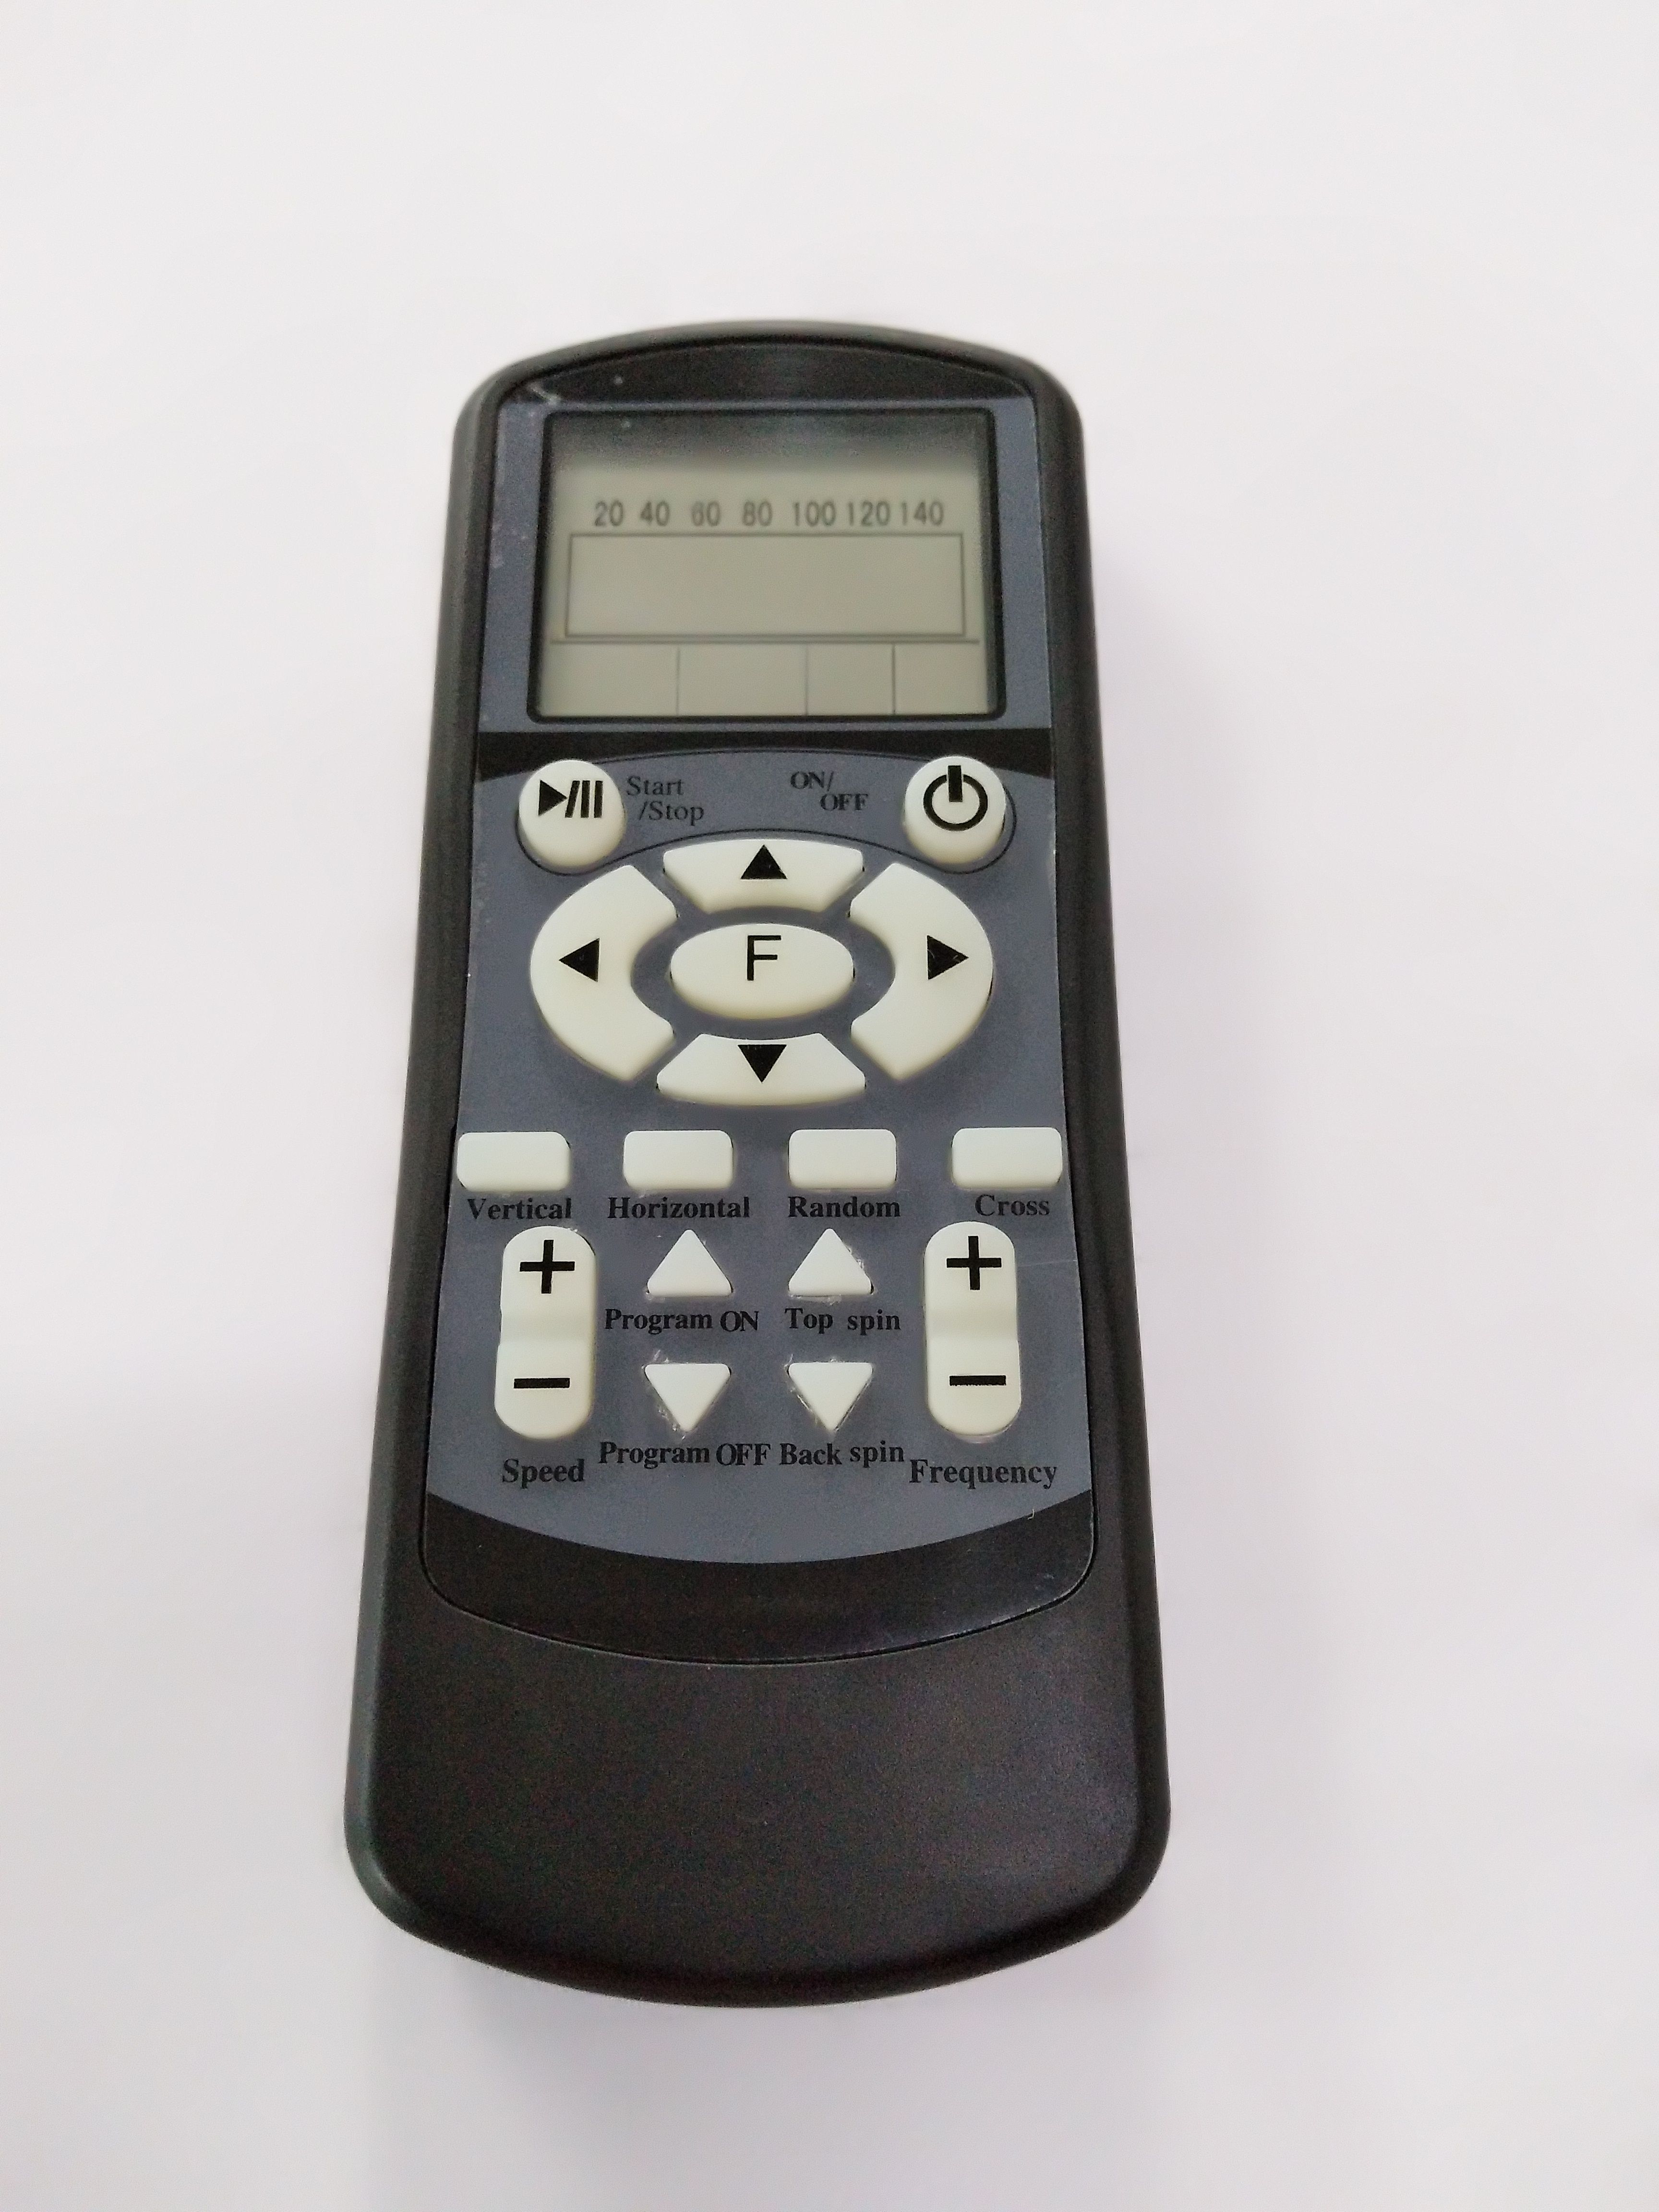 Ballmachine Accessories: MSV PlayTec Remote Control Standard